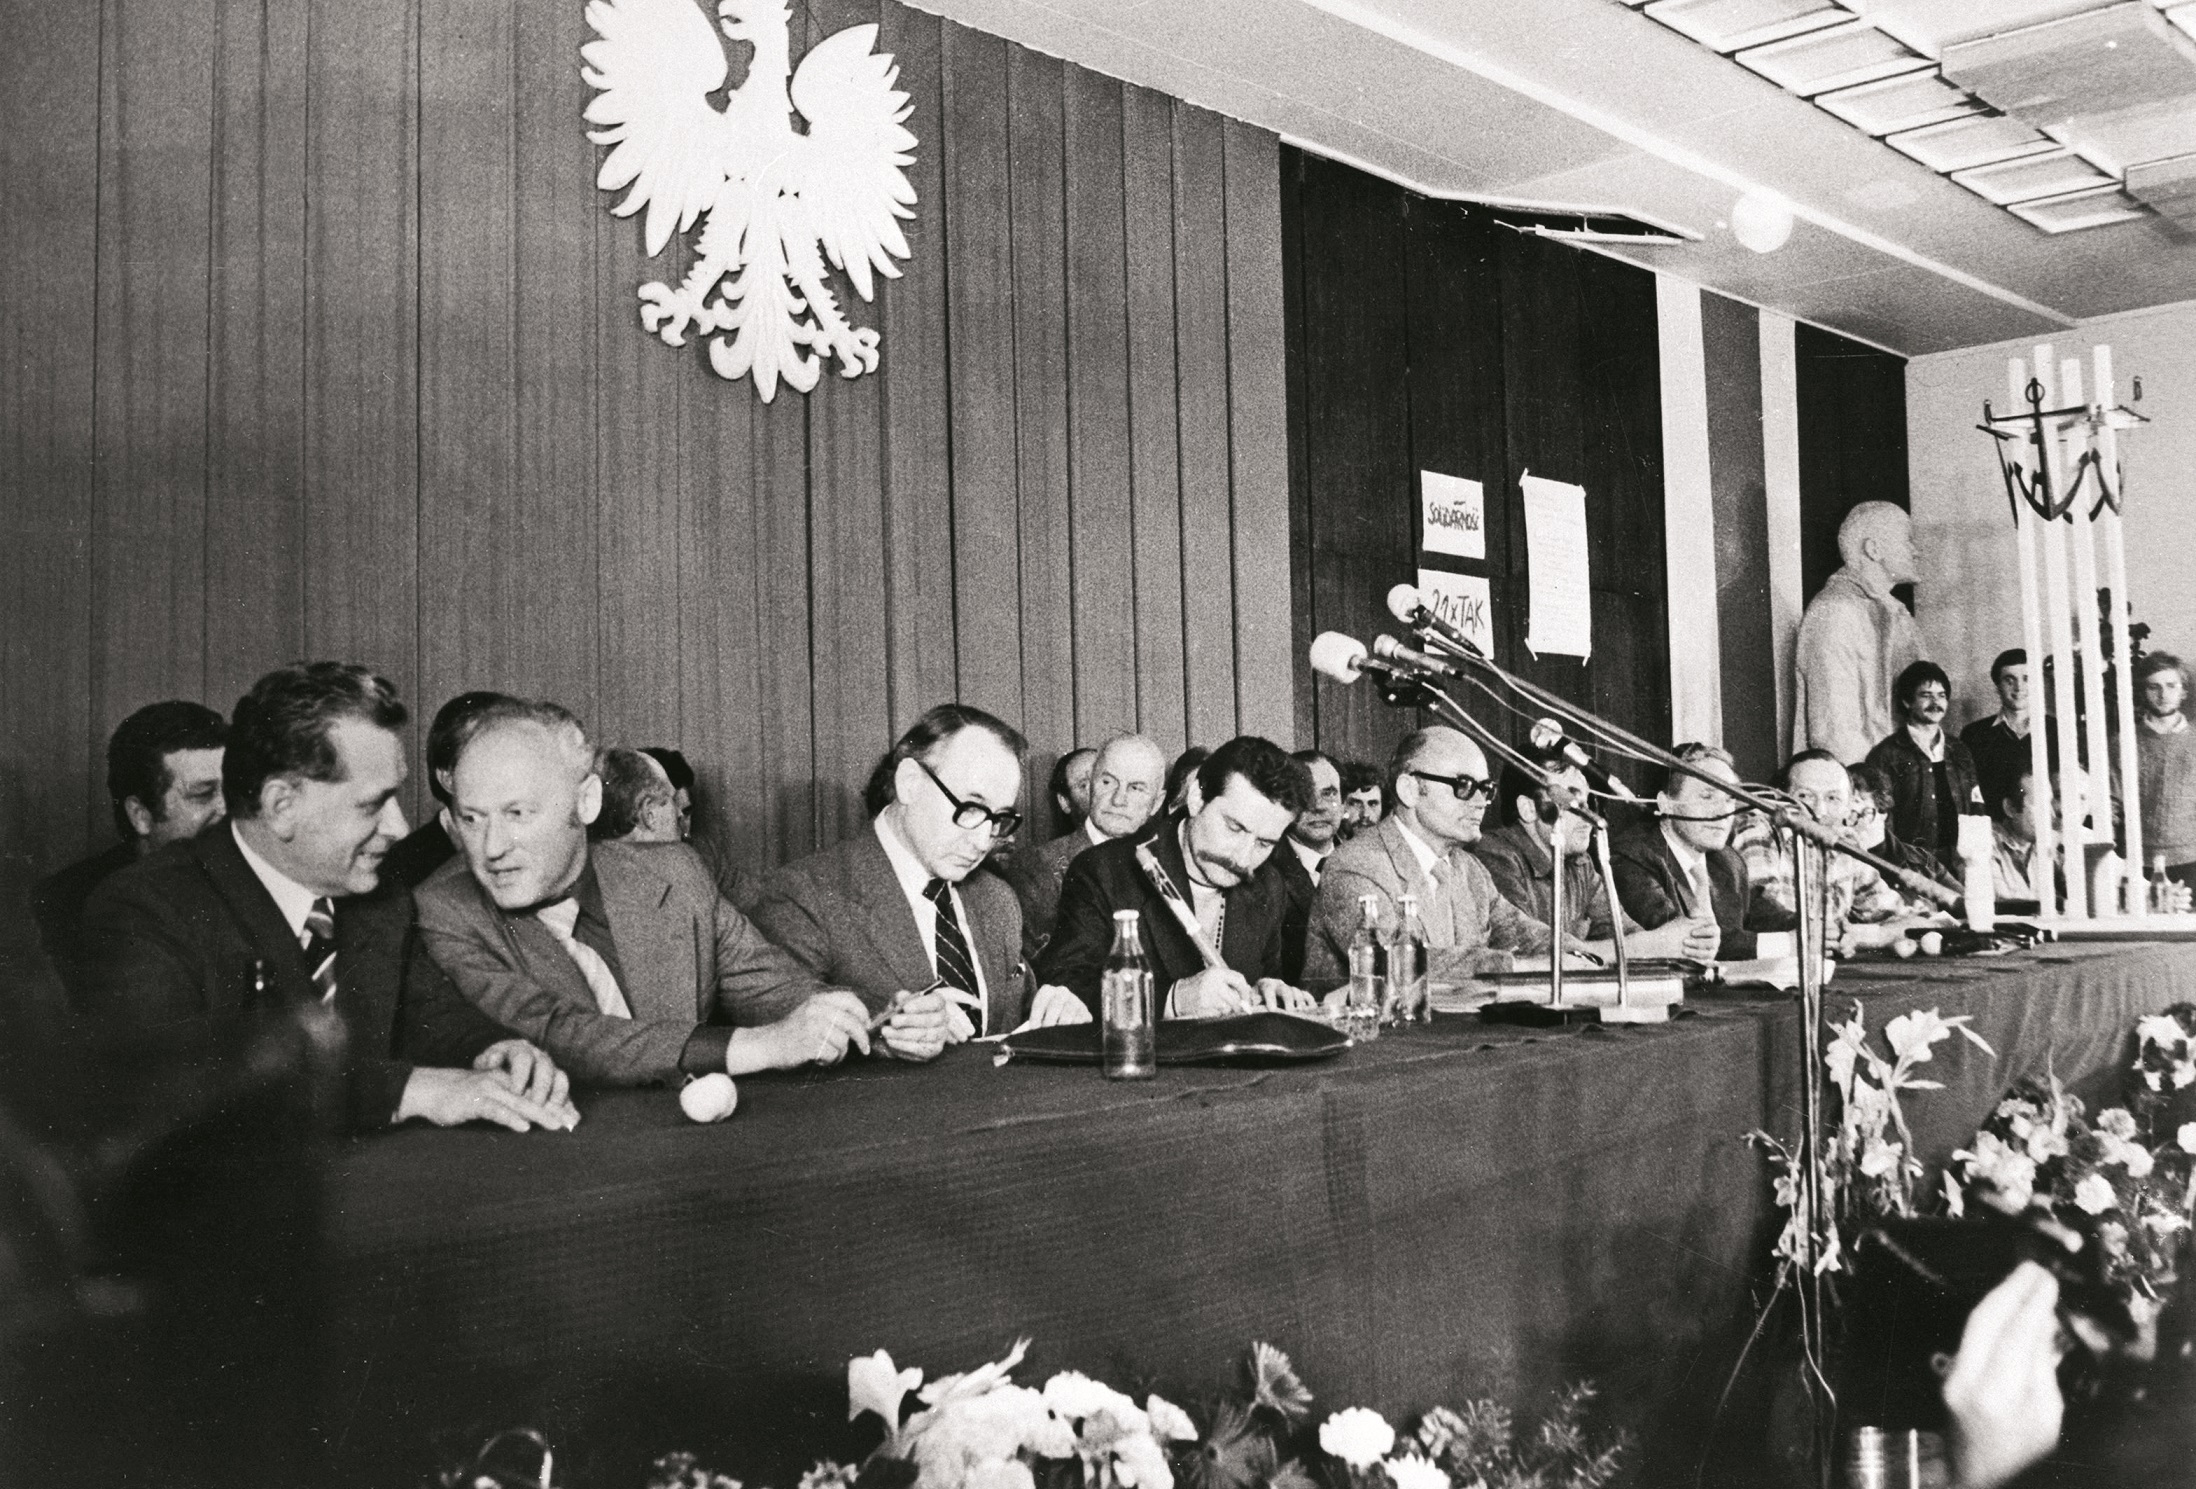 Podpisanie porozumień sierpniowych przez Lecha Wałęsę (czwarty z lewej) i przedstawiciela rządu Mieczysława Jagielskiego (trzeci z lewej), Sala BHP Stoczni Gdańskiej, 31 sierpnia 1980 r.